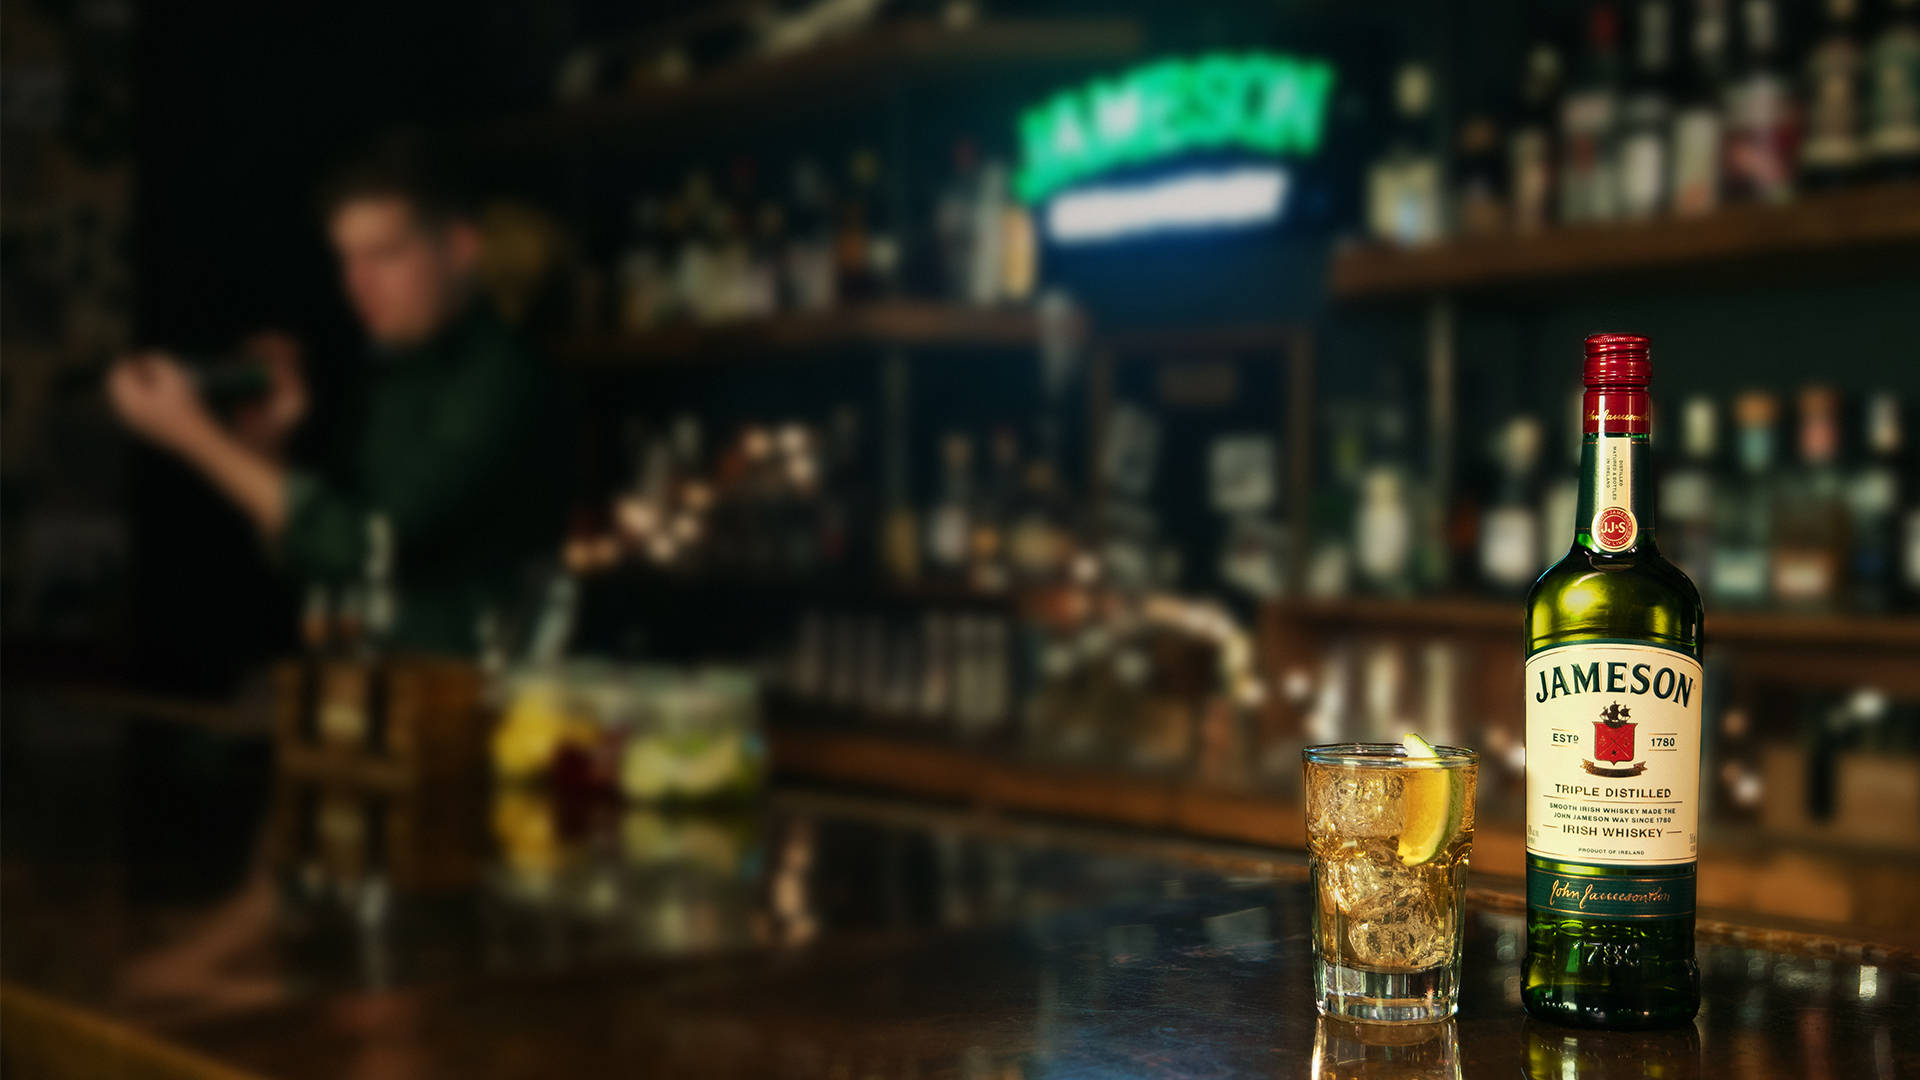 Jameson Bar And Drinks Wallpaper